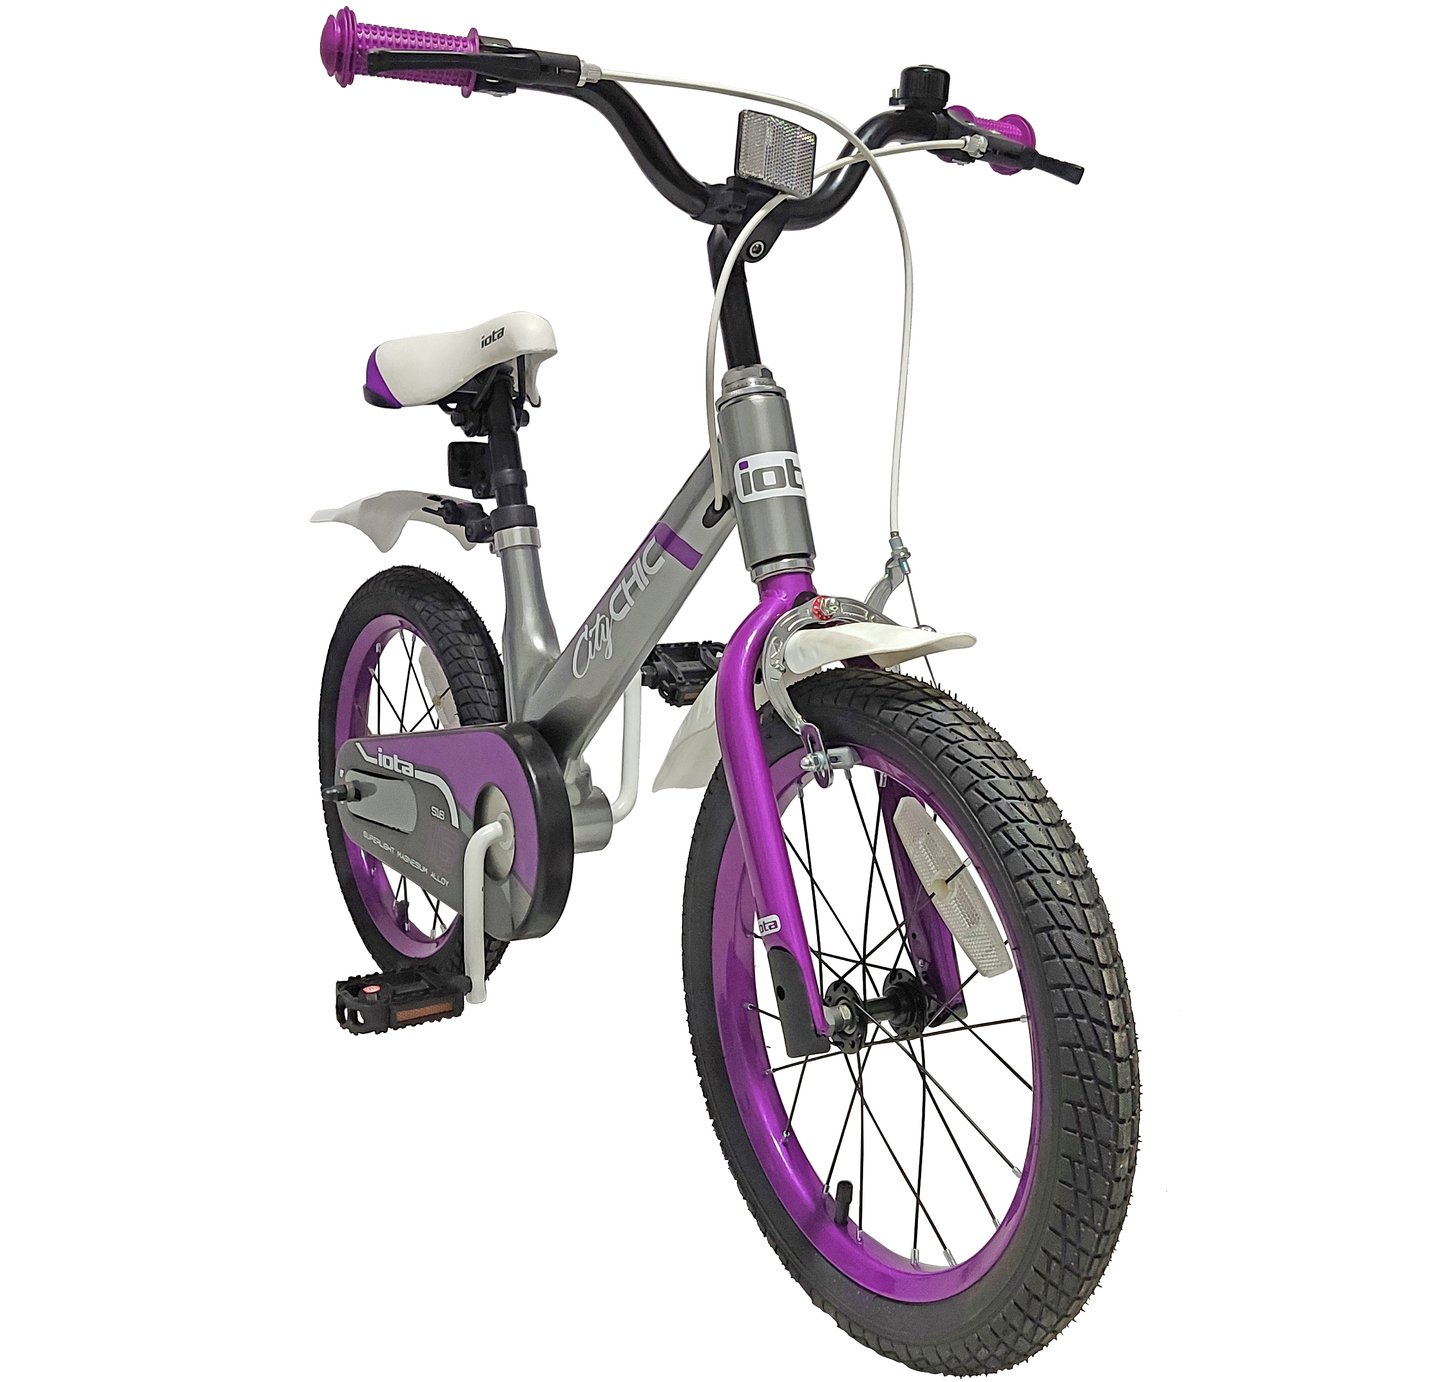 pazzaz diamond 24 inch wheel size kids bike